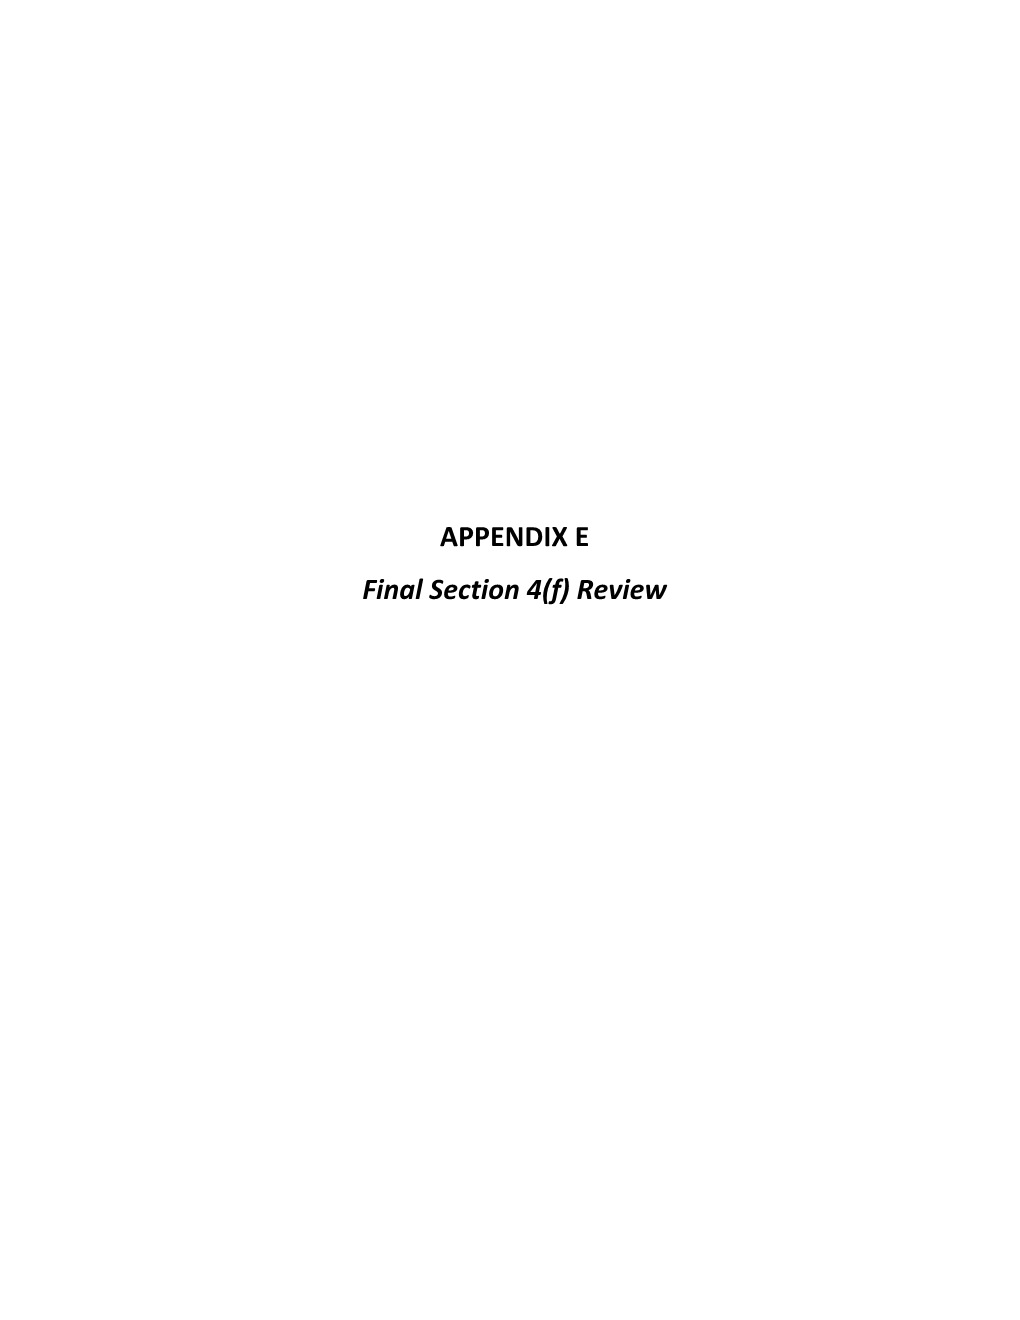 APPENDIX E Final Section 4(F) Review